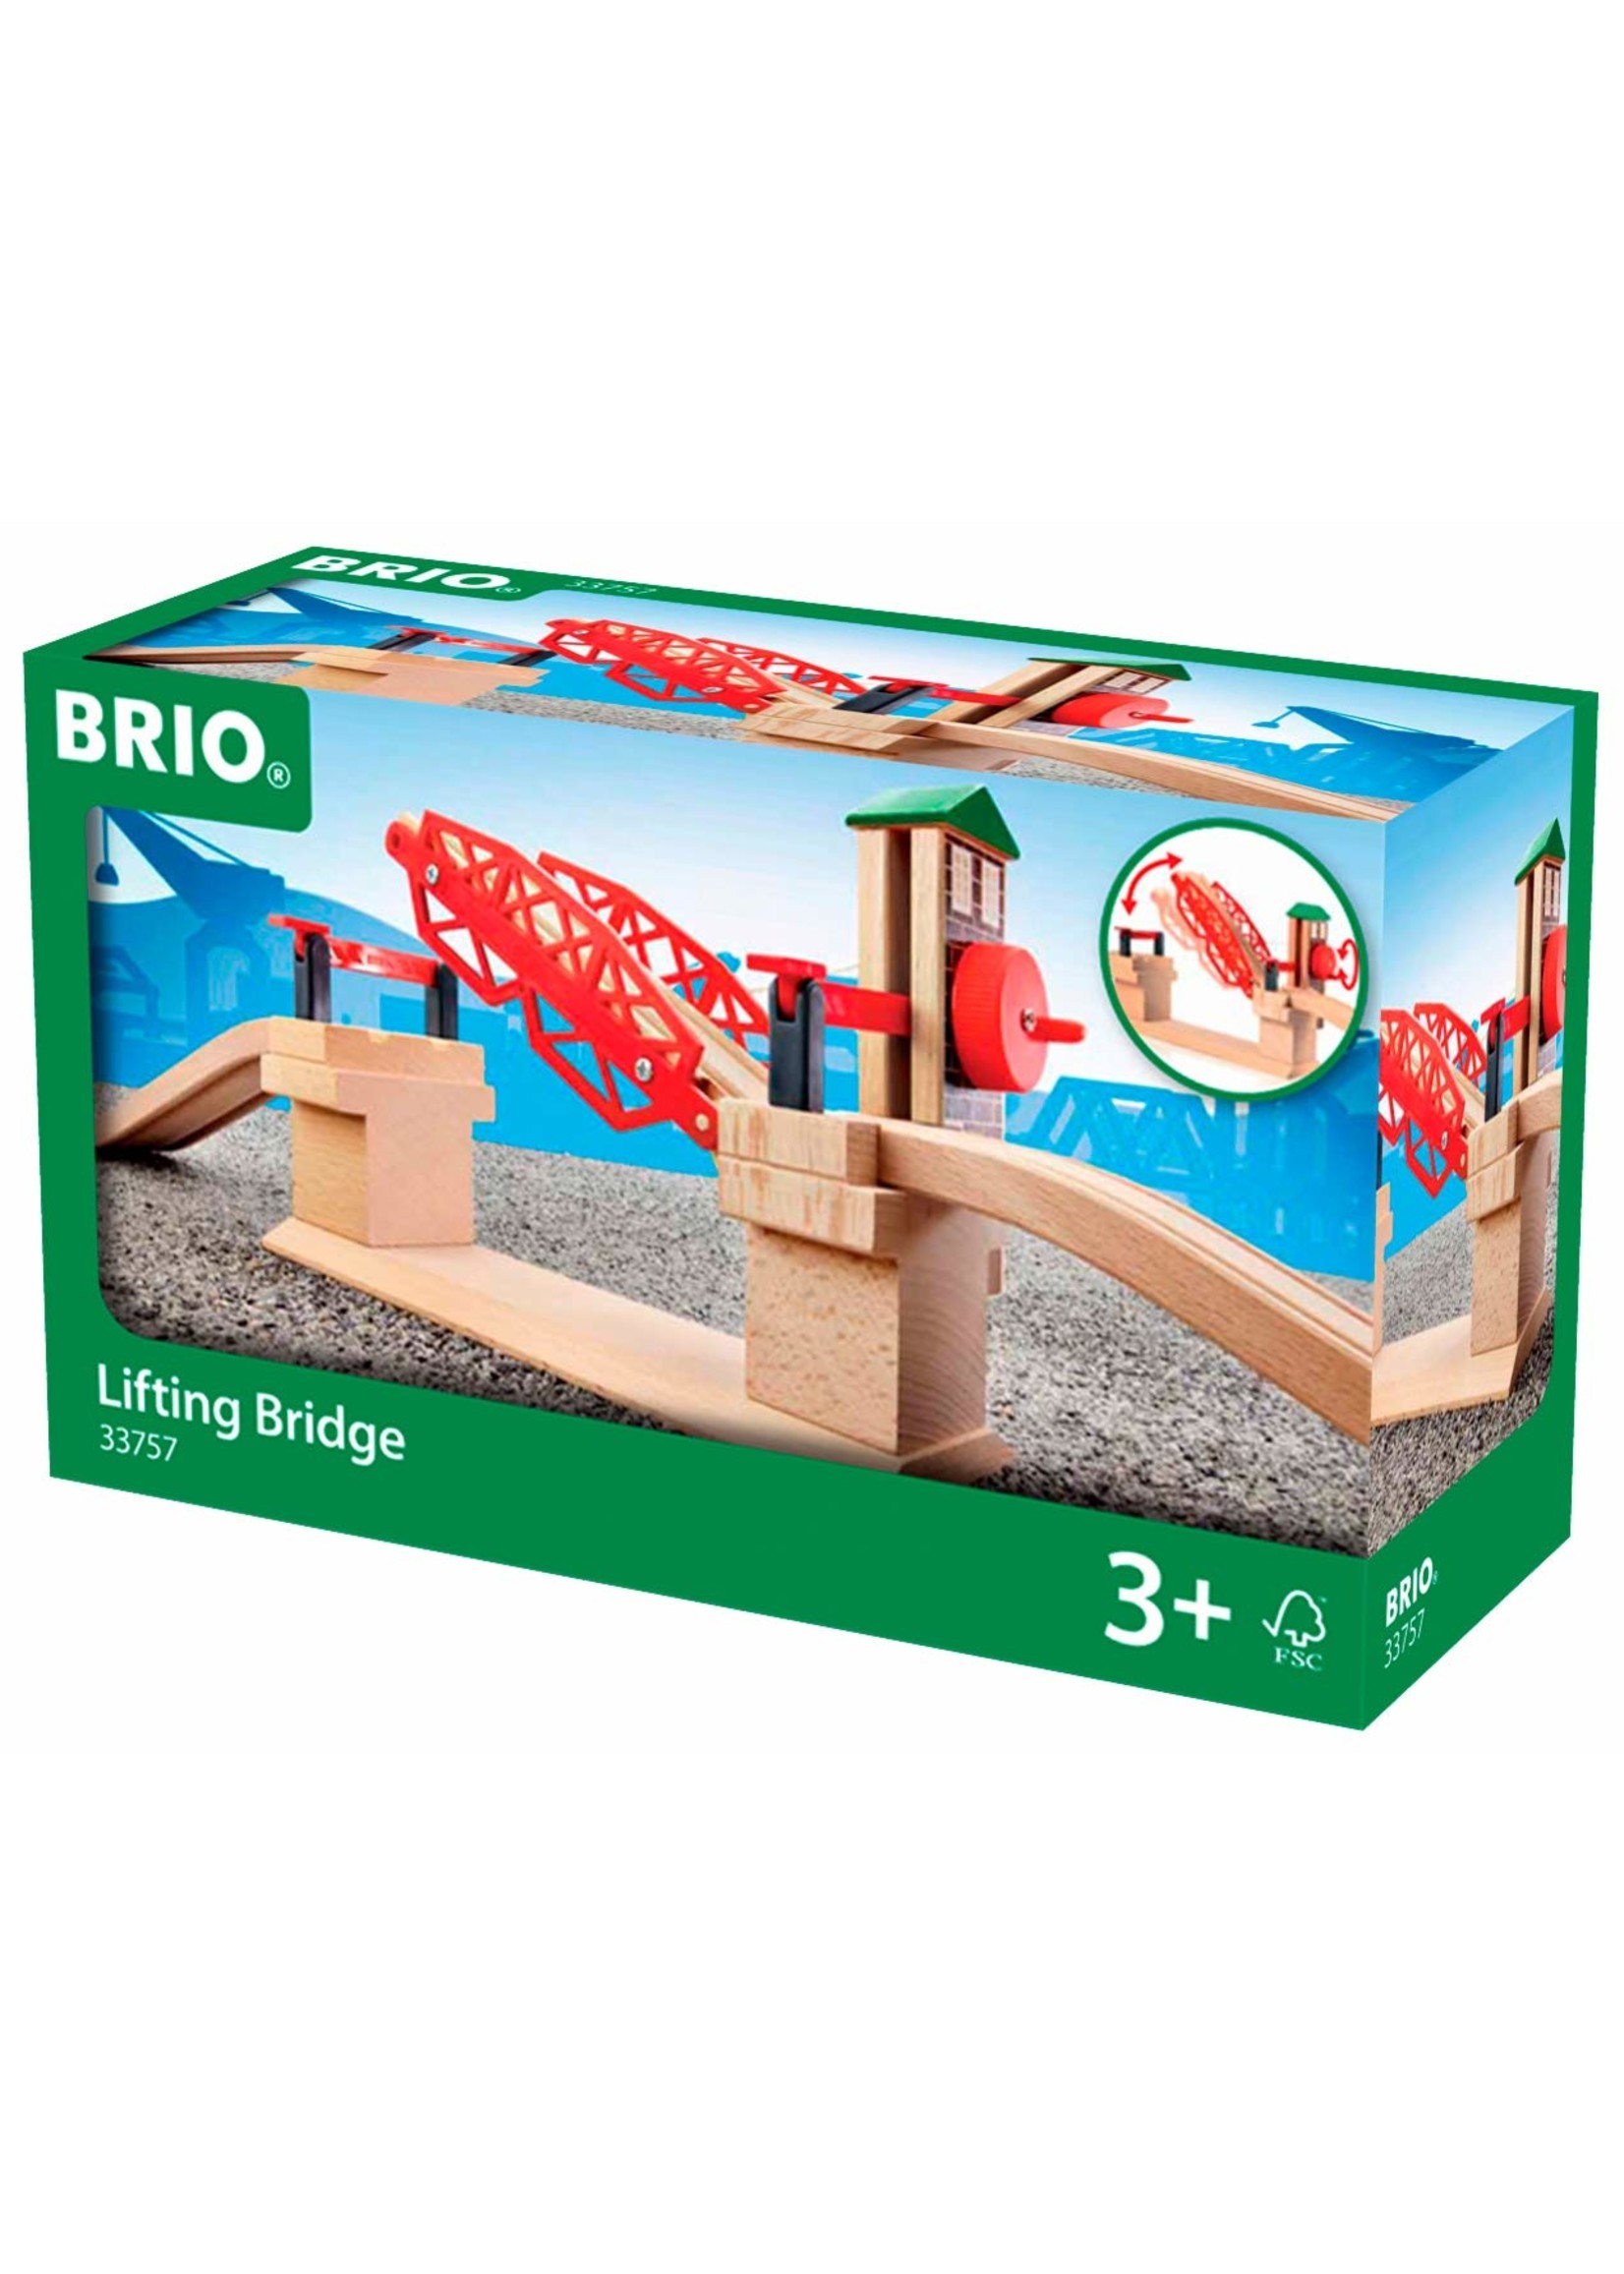 Brio 33757 - Lifting Bridge